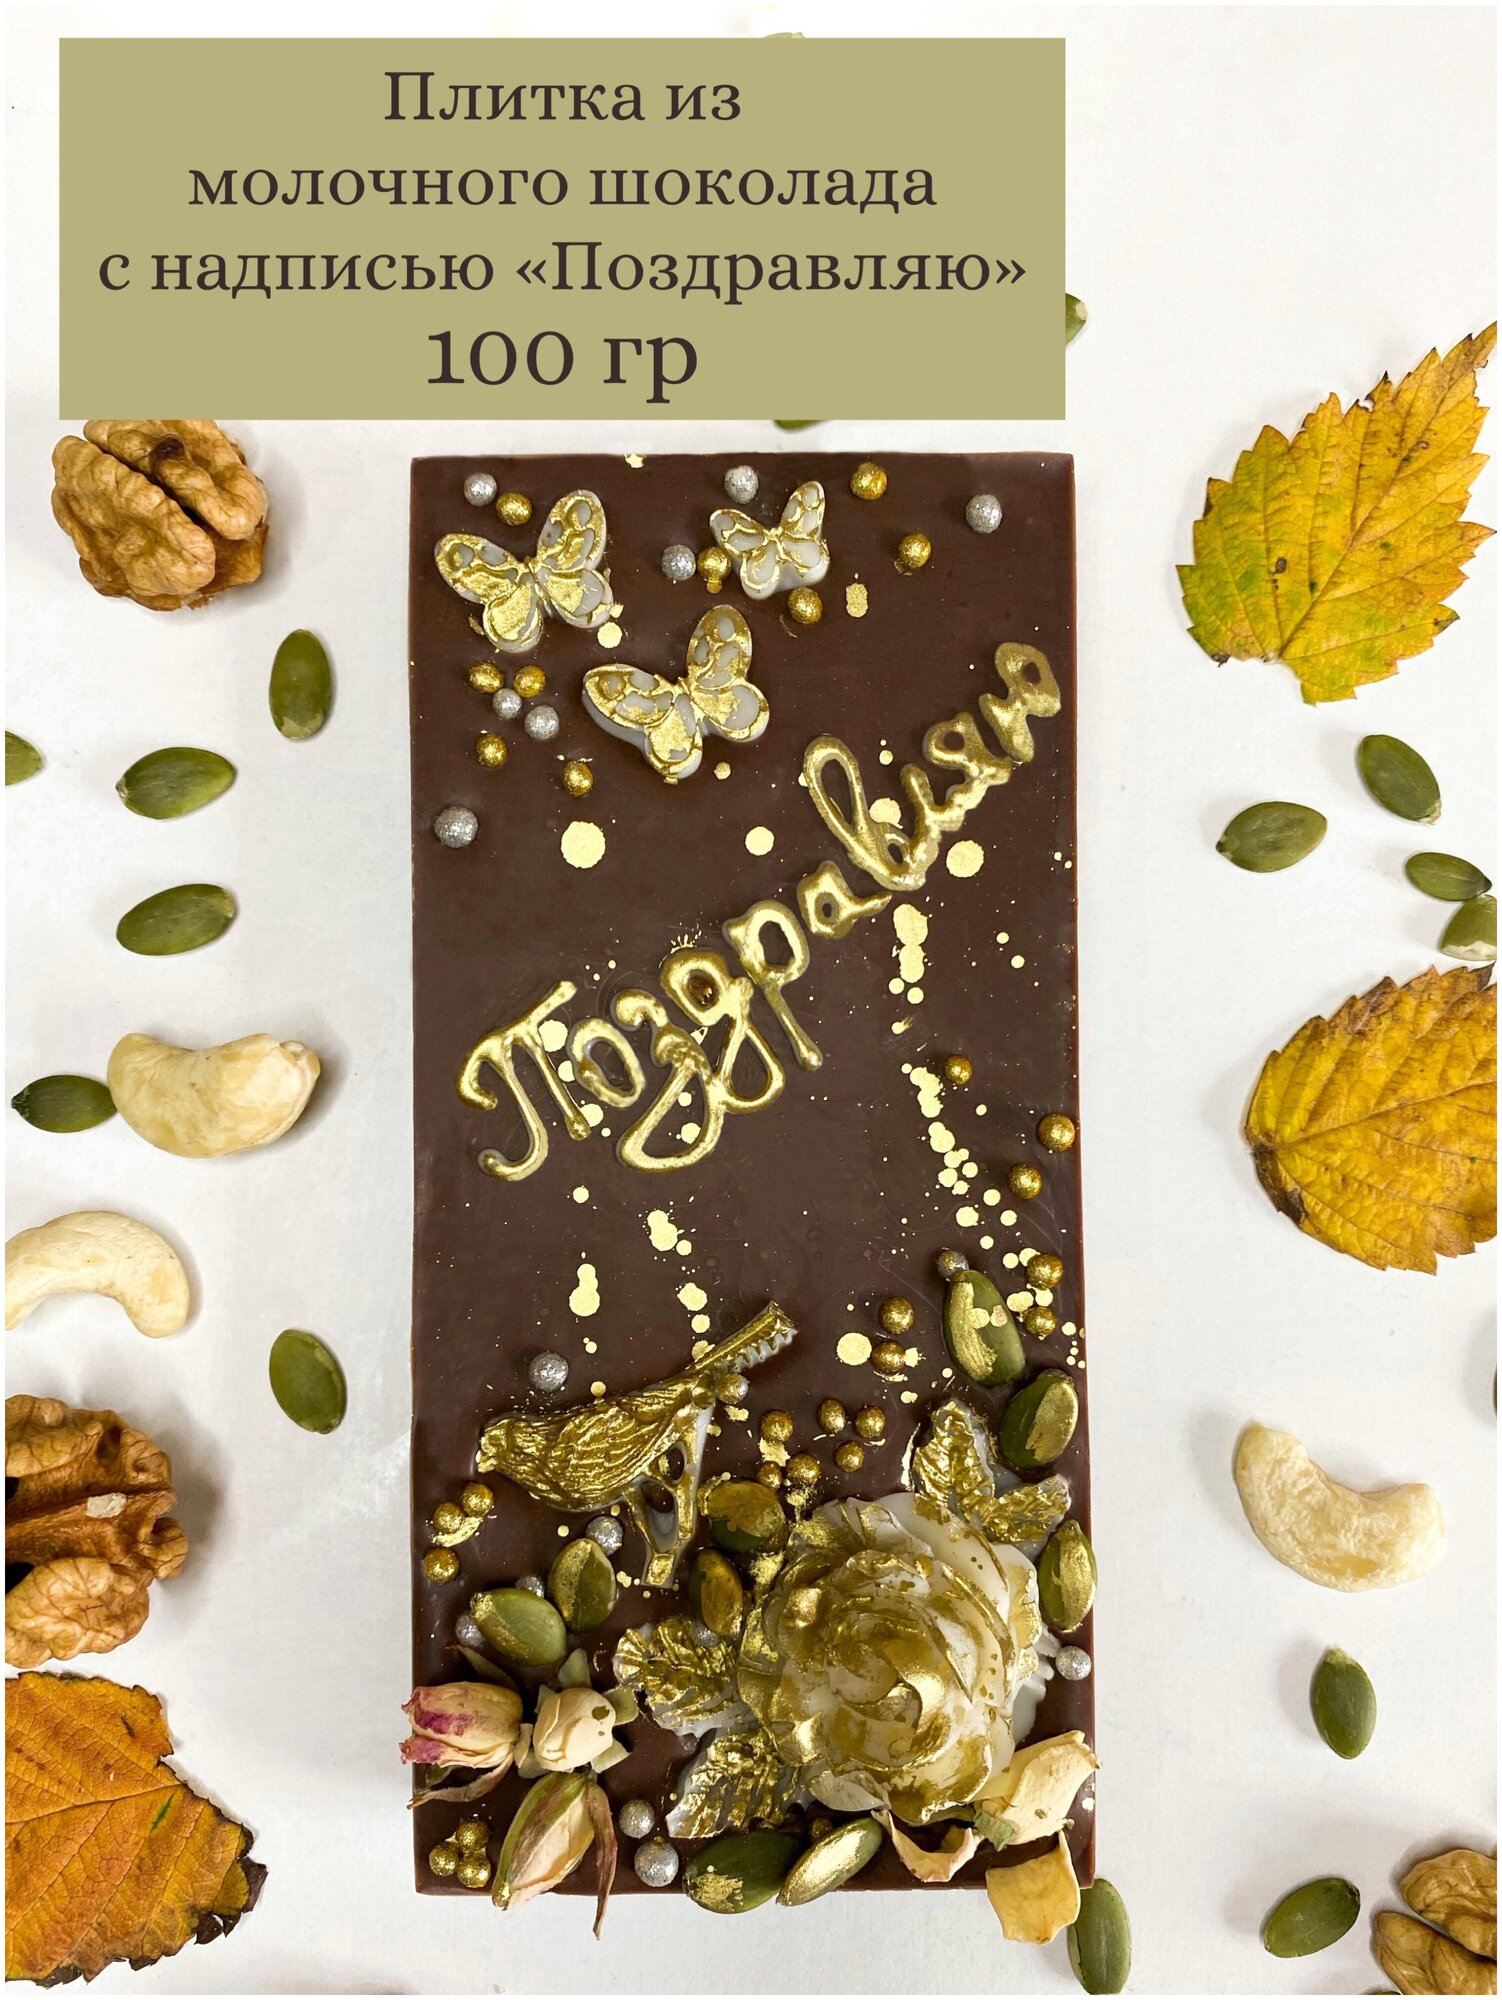 Плитка из молочного шоколада, бельгийский шоколад, шоколадка-открытка "Поздравляю", подарочный шоколад, KPfoodo - фотография № 2